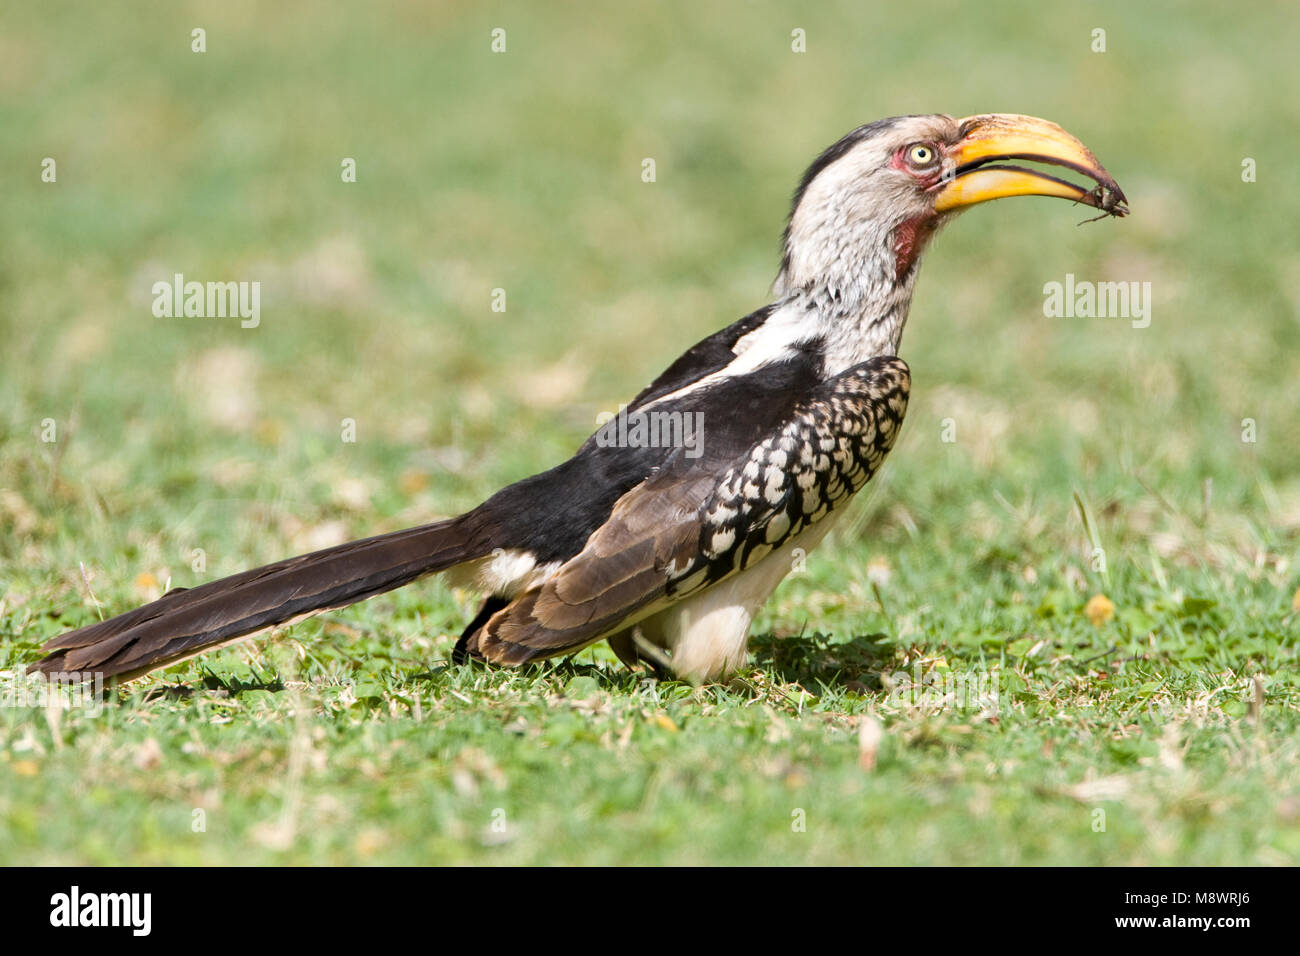 Zuidelijke Geelsnaveltok, Southern Yellow-Billed Hornbill, Tockus leucomelas, Geelsnaveltok Stock Photo